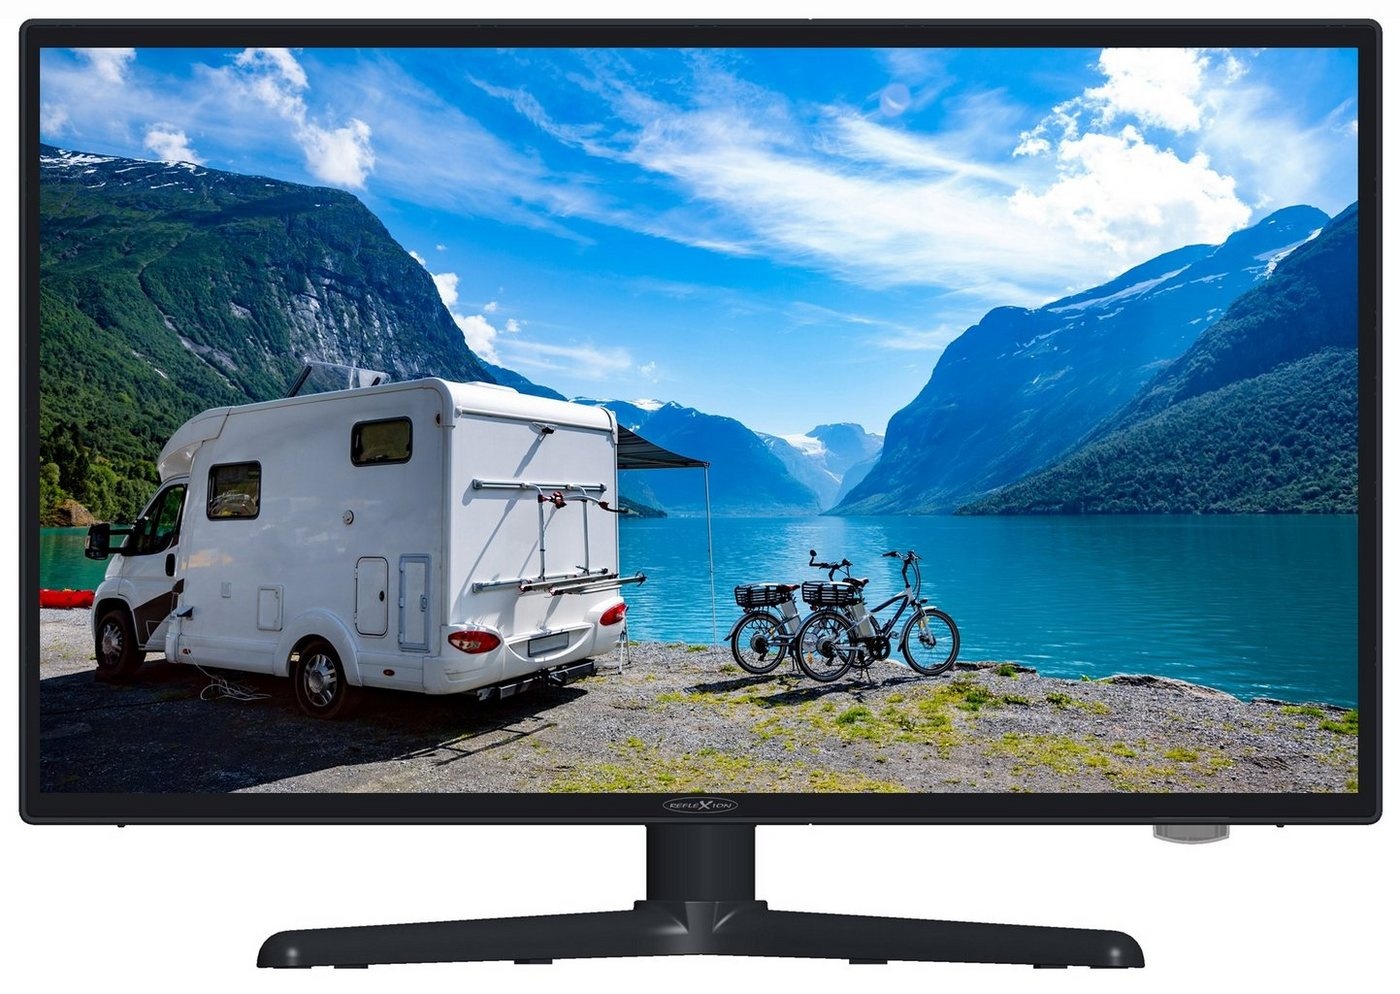 Reflexion LEDW220+ LED-Fernseher (55,00 cm/22 Zoll, Full HD, DC IN 12 Volt / 24 Volt, Netzteil 230 Volt, Wohnmobil, Camping) schwarz